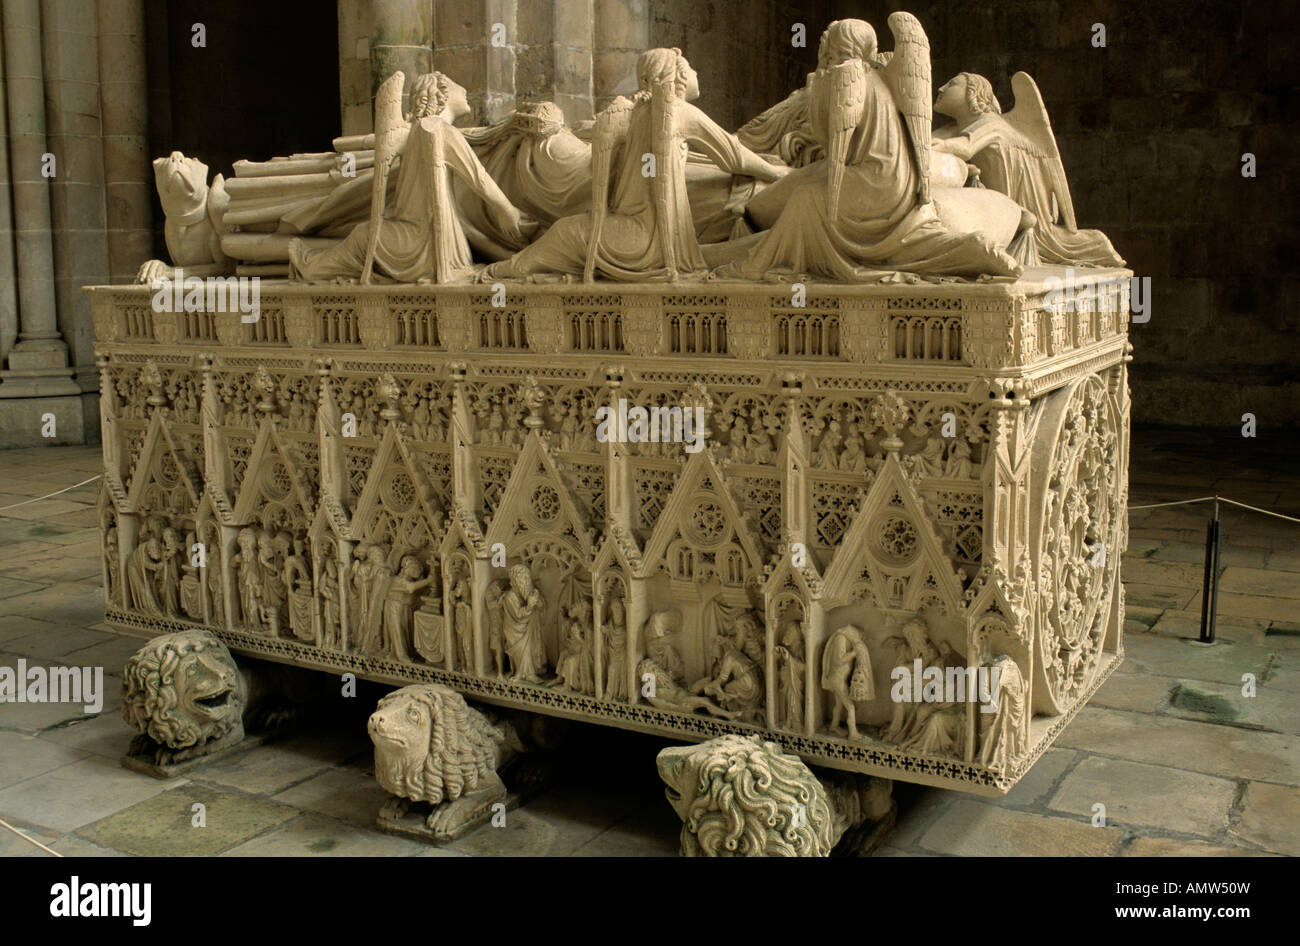 La tombe royale de Pedro I au monastère d'Alcobaça, Portugal central Banque D'Images